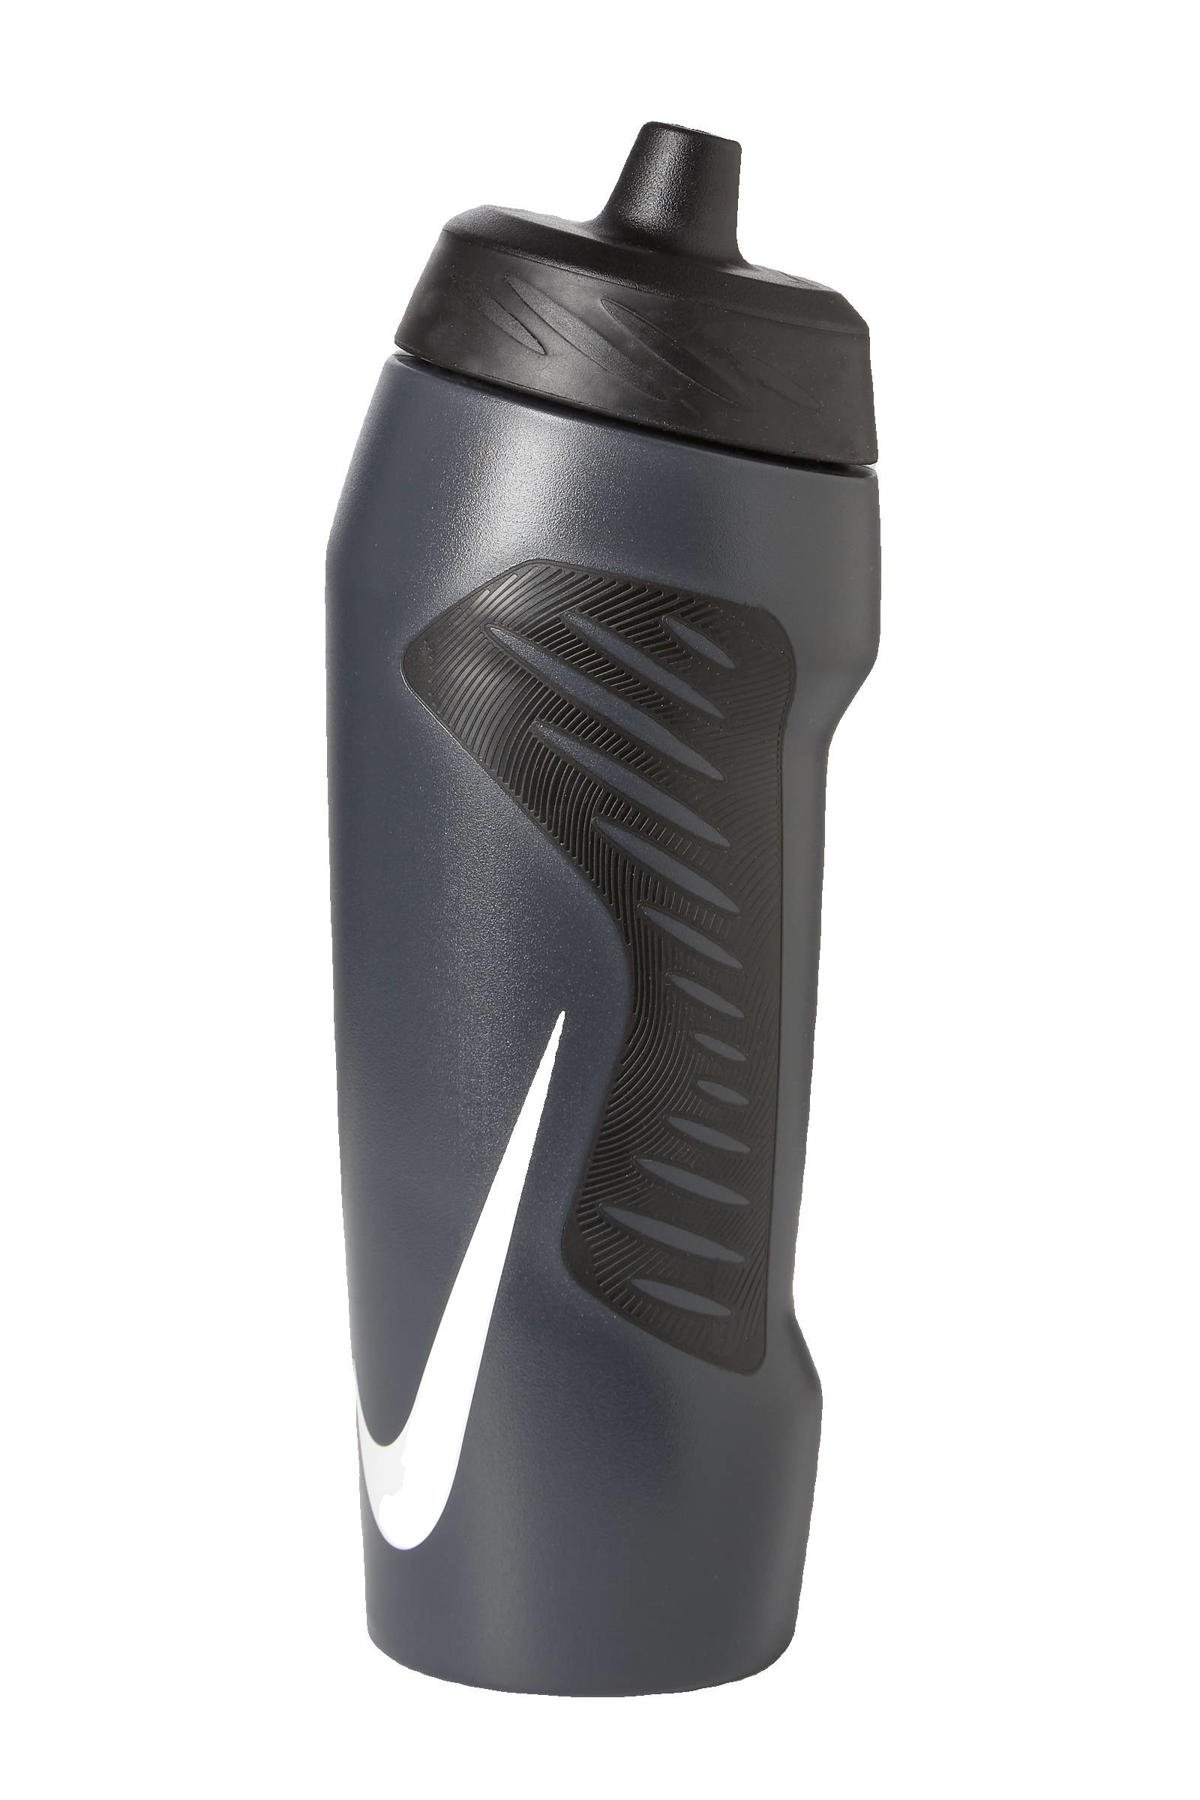 Nike sportbidon - 710 ml | wehkamp